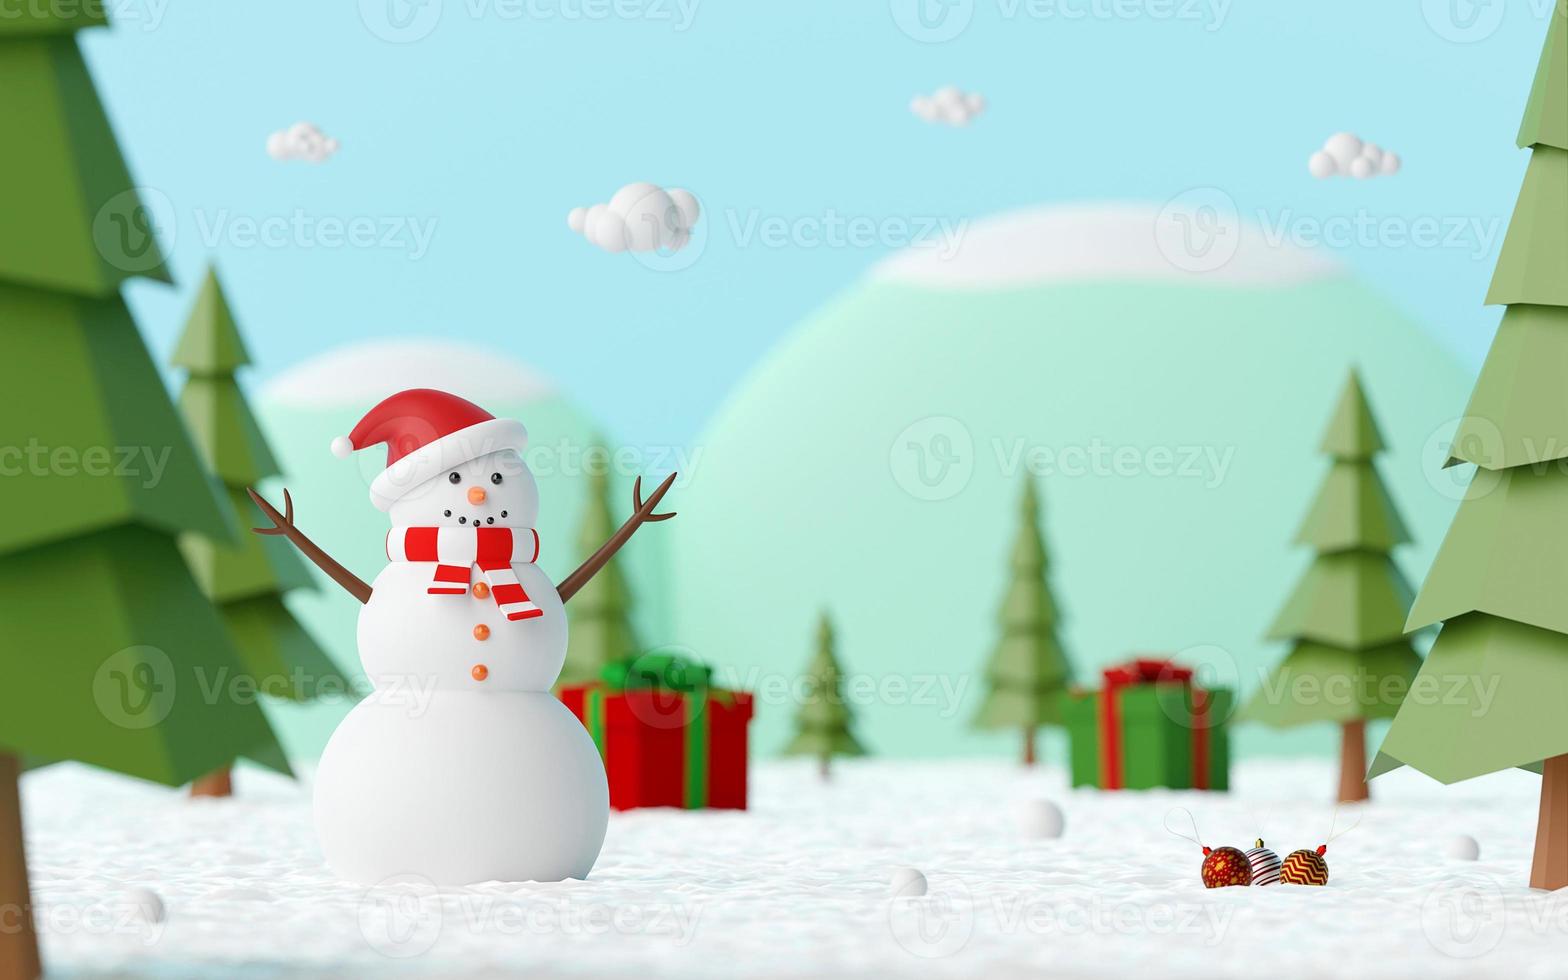 prettige kerstdagen en gelukkig nieuwjaar, landschap van sneeuwpop in dennenbos vieren met kerstcadeau op een besneeuwde grond, 3D-rendering foto